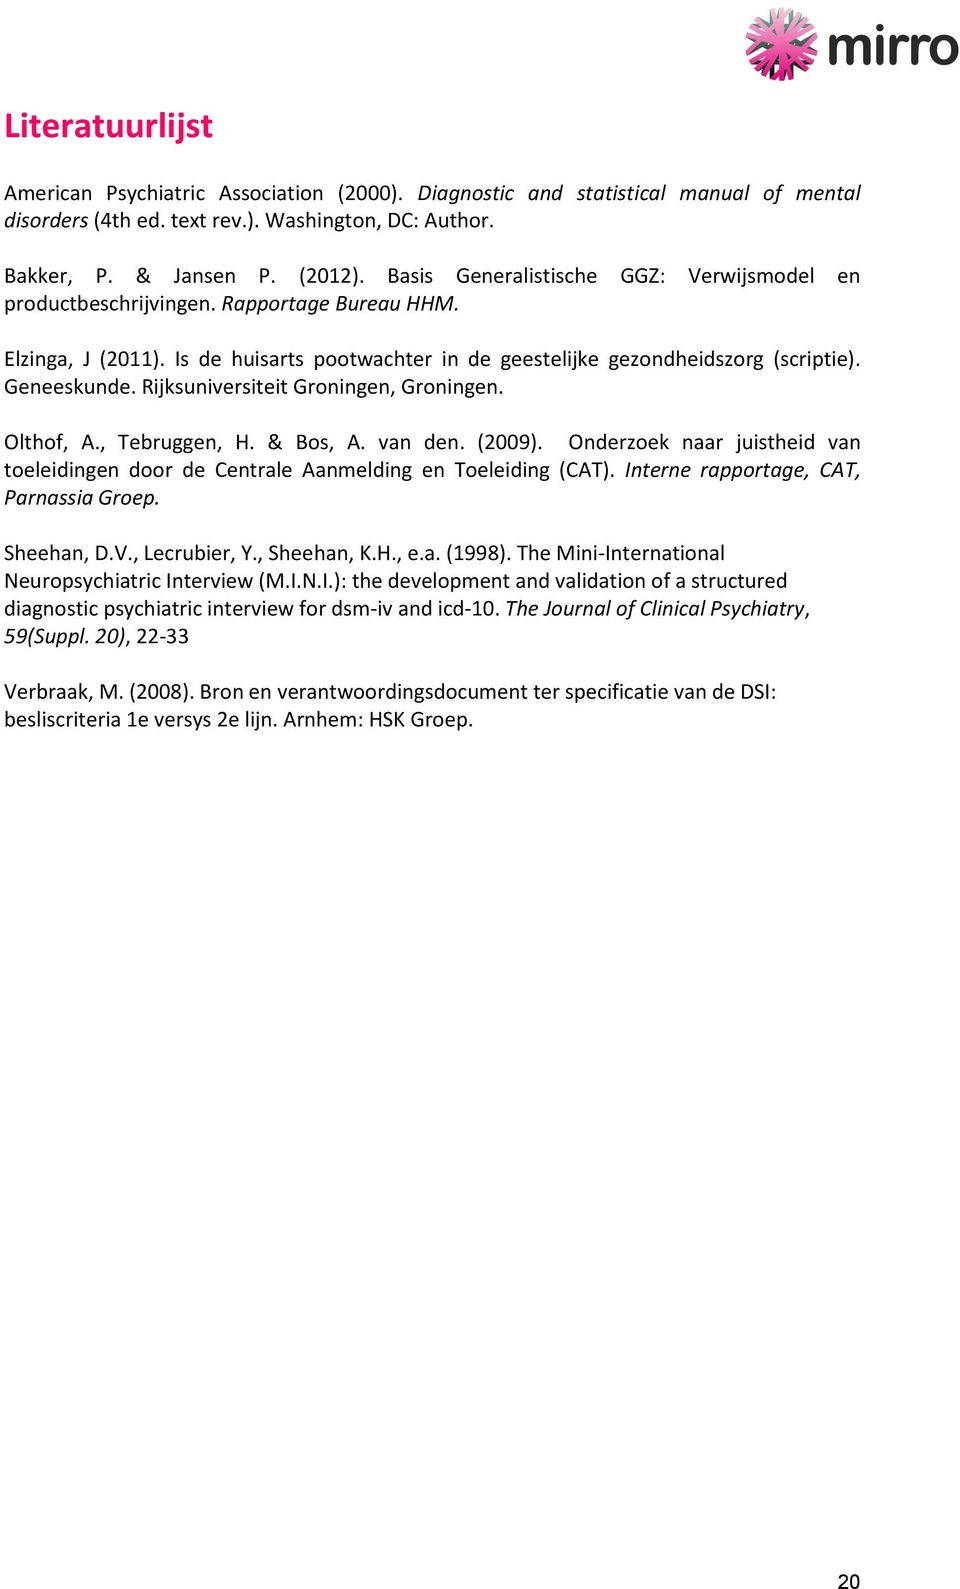 Rijksuniversiteit Groningen, Groningen. Olthof, A., Tebruggen, H. & Bos, A. van den. (2009). Onderzoek naar juistheid van toeleidingen door de Centrale Aanmelding en Toeleiding (CAT).